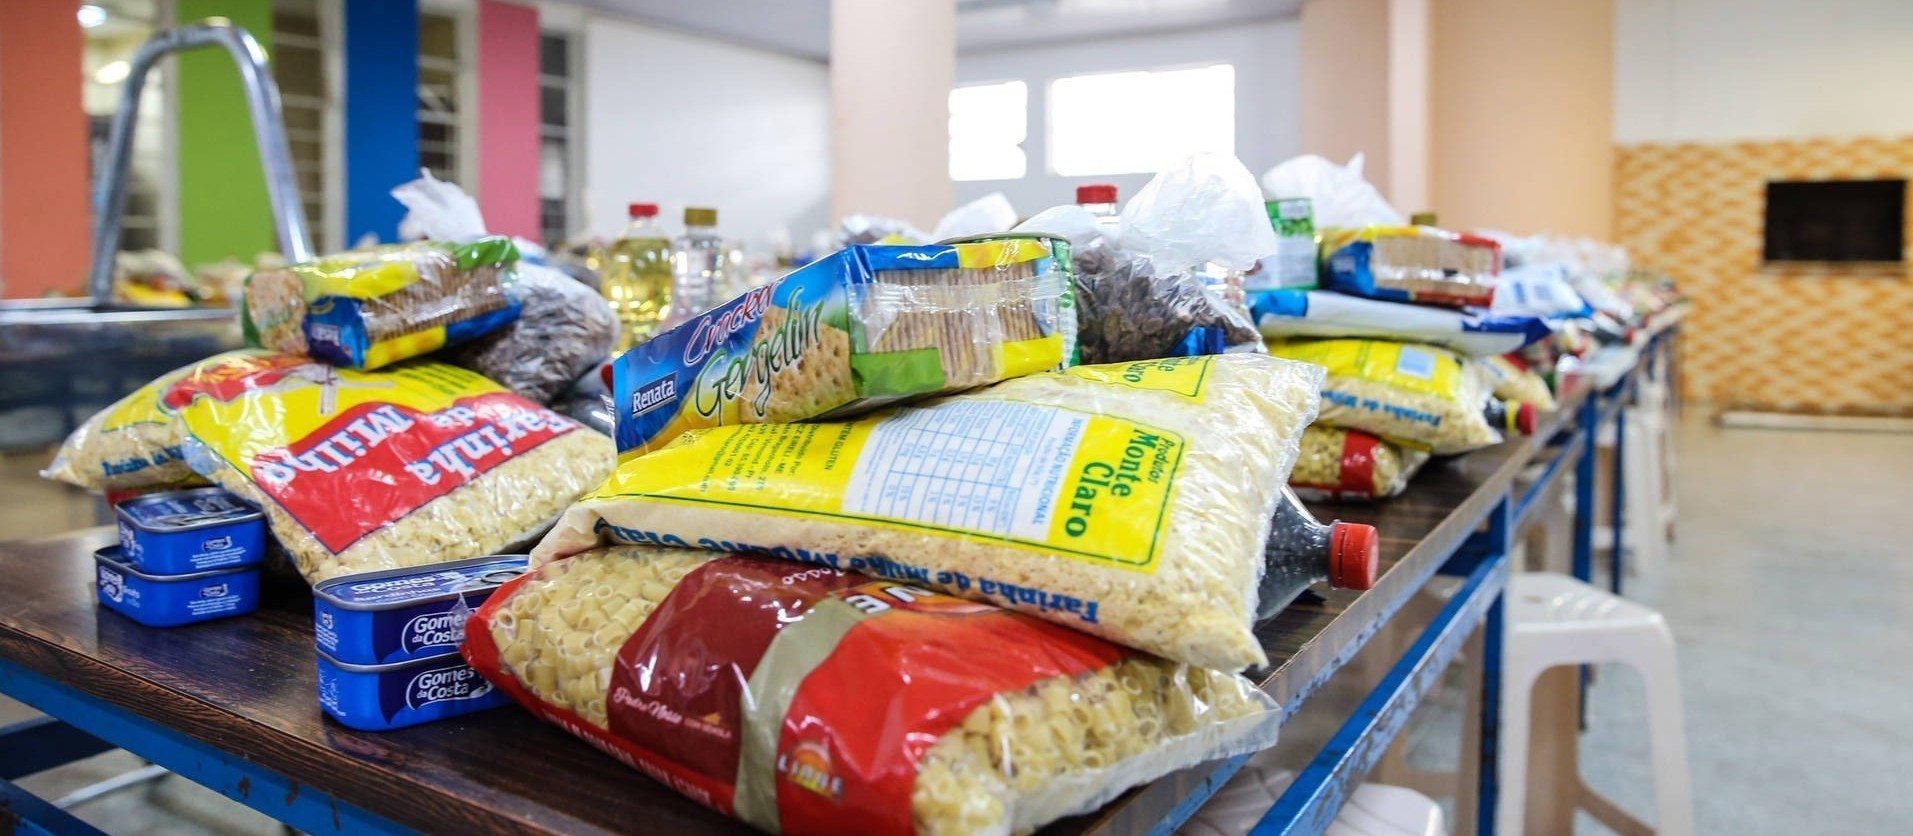 Preço da cesta básica registra queda em Ponta Grossa no mês de fevereiro 